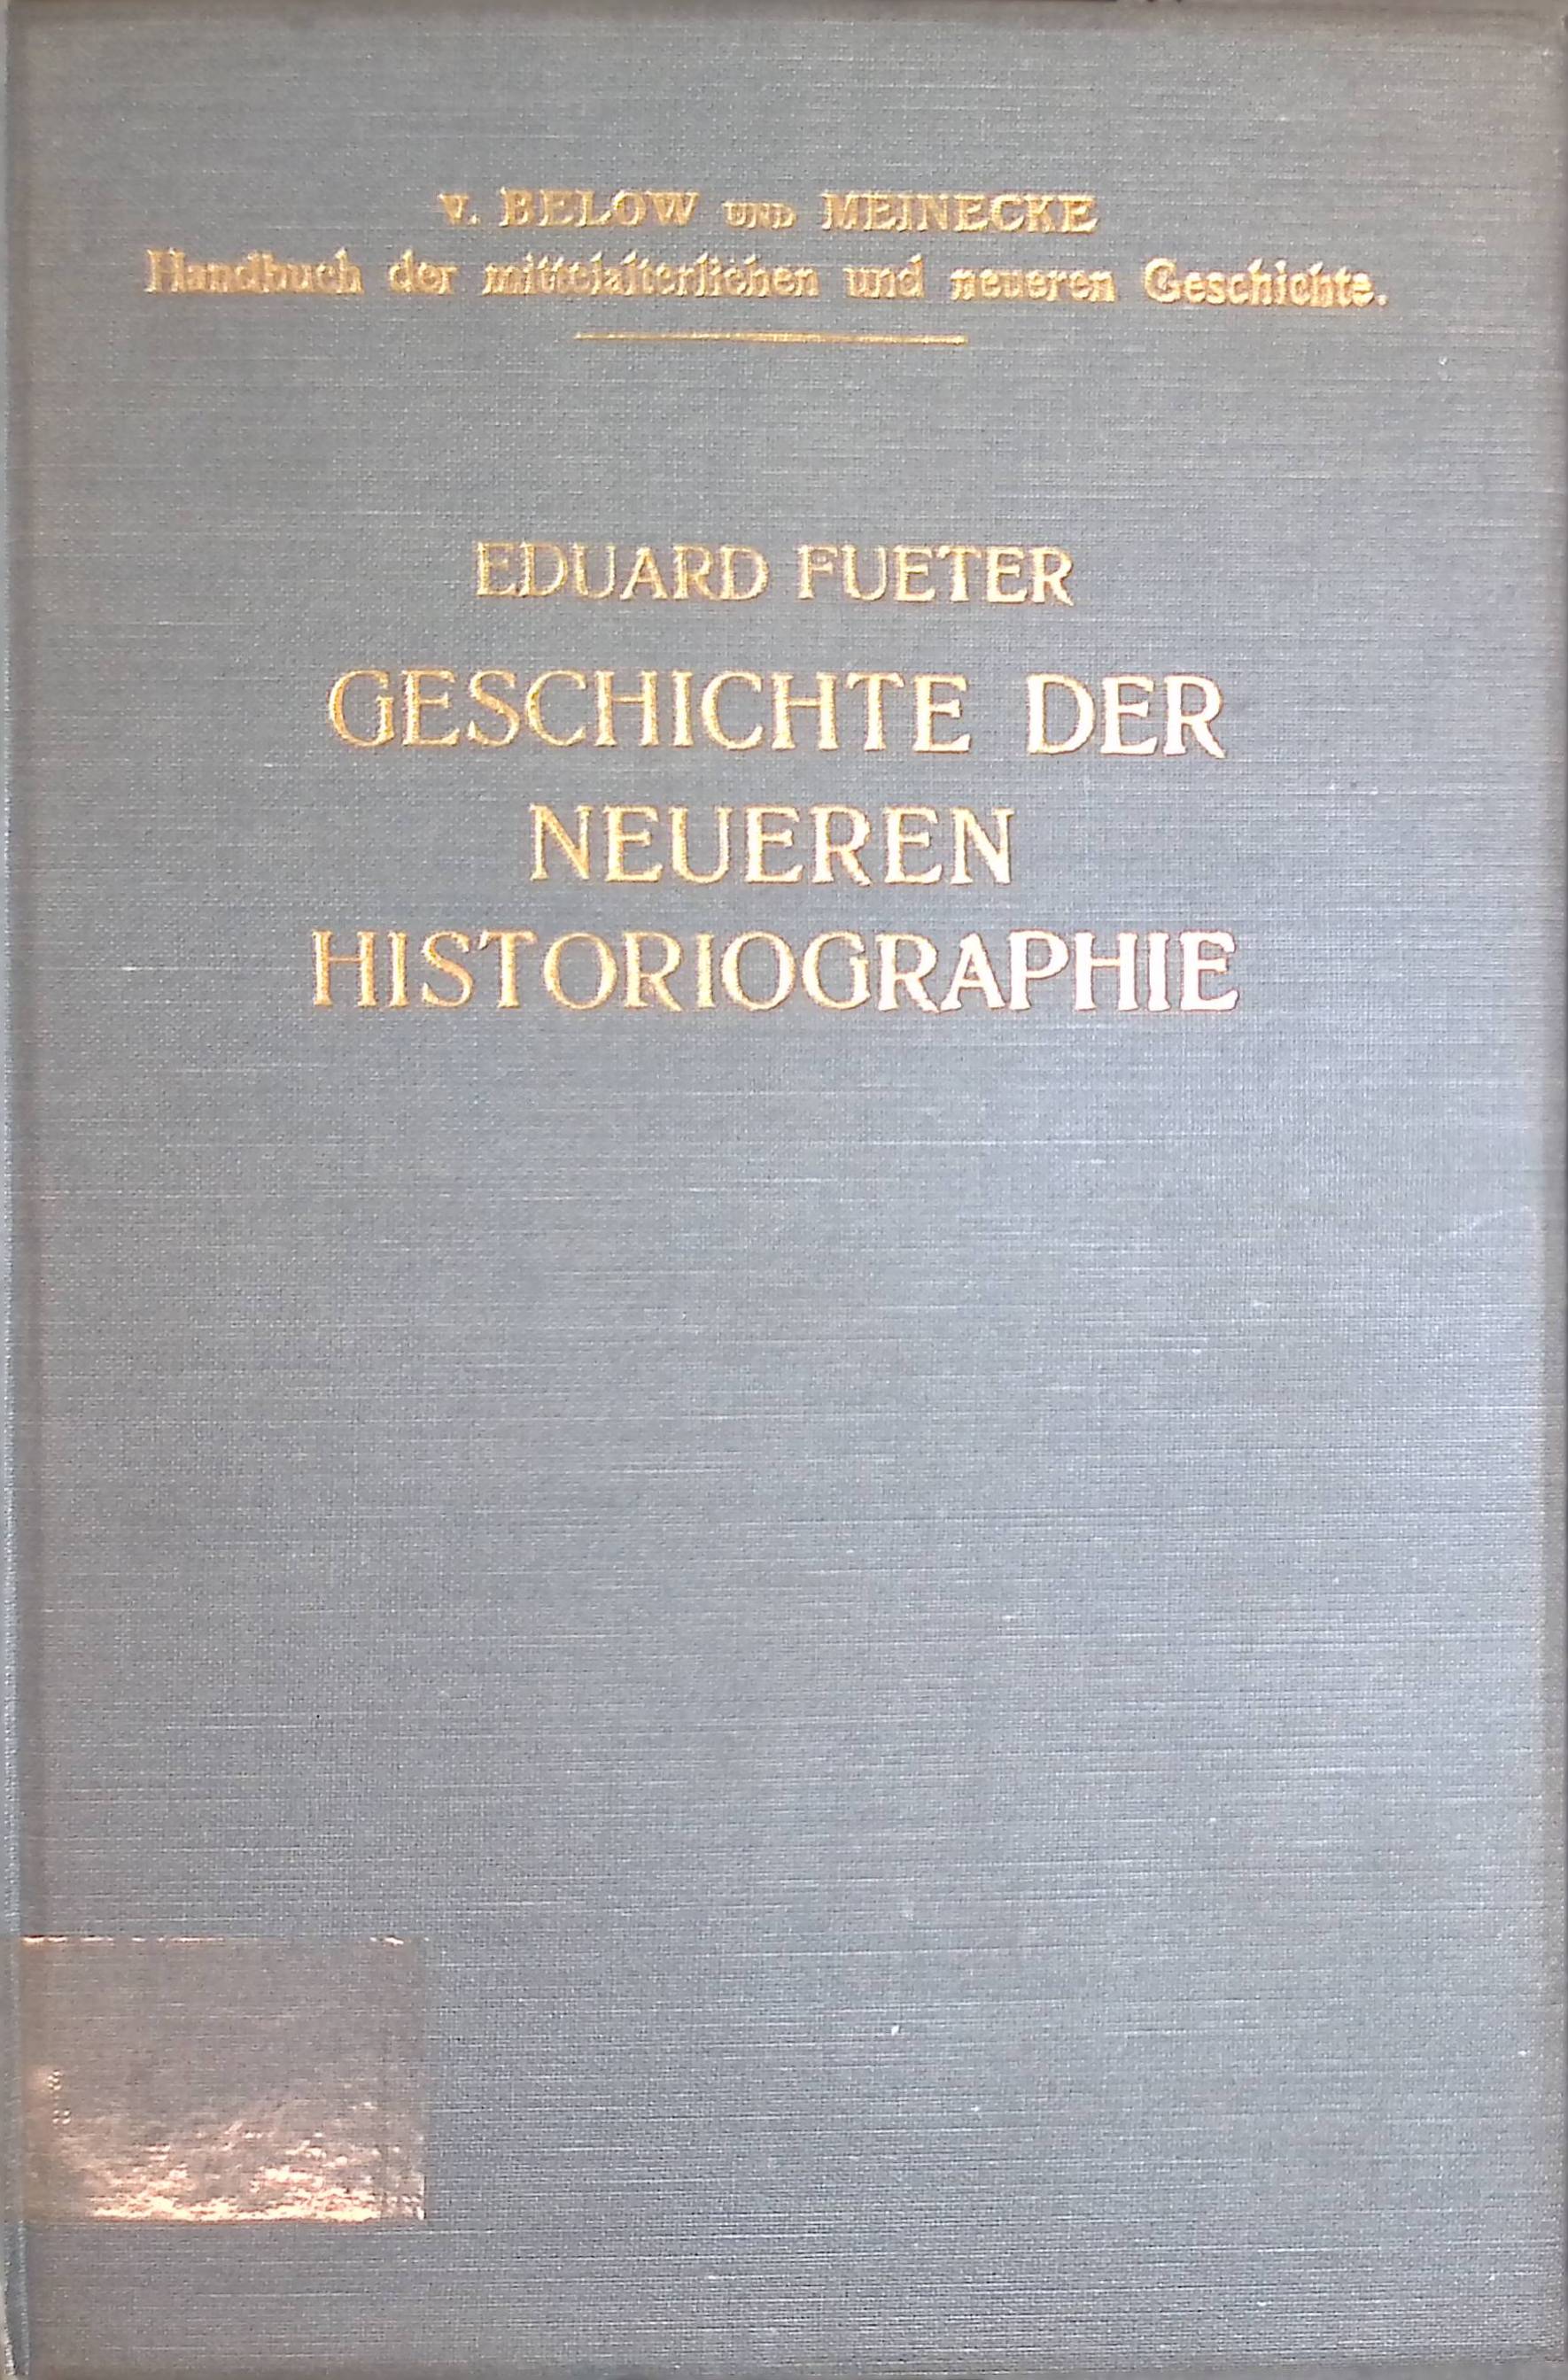 Geschichte der neueren Historiographie. Handbuch der mittelalterlichen und neueren Geschichte, Abteilung I: Allgemeines. - Fueter, Eduard